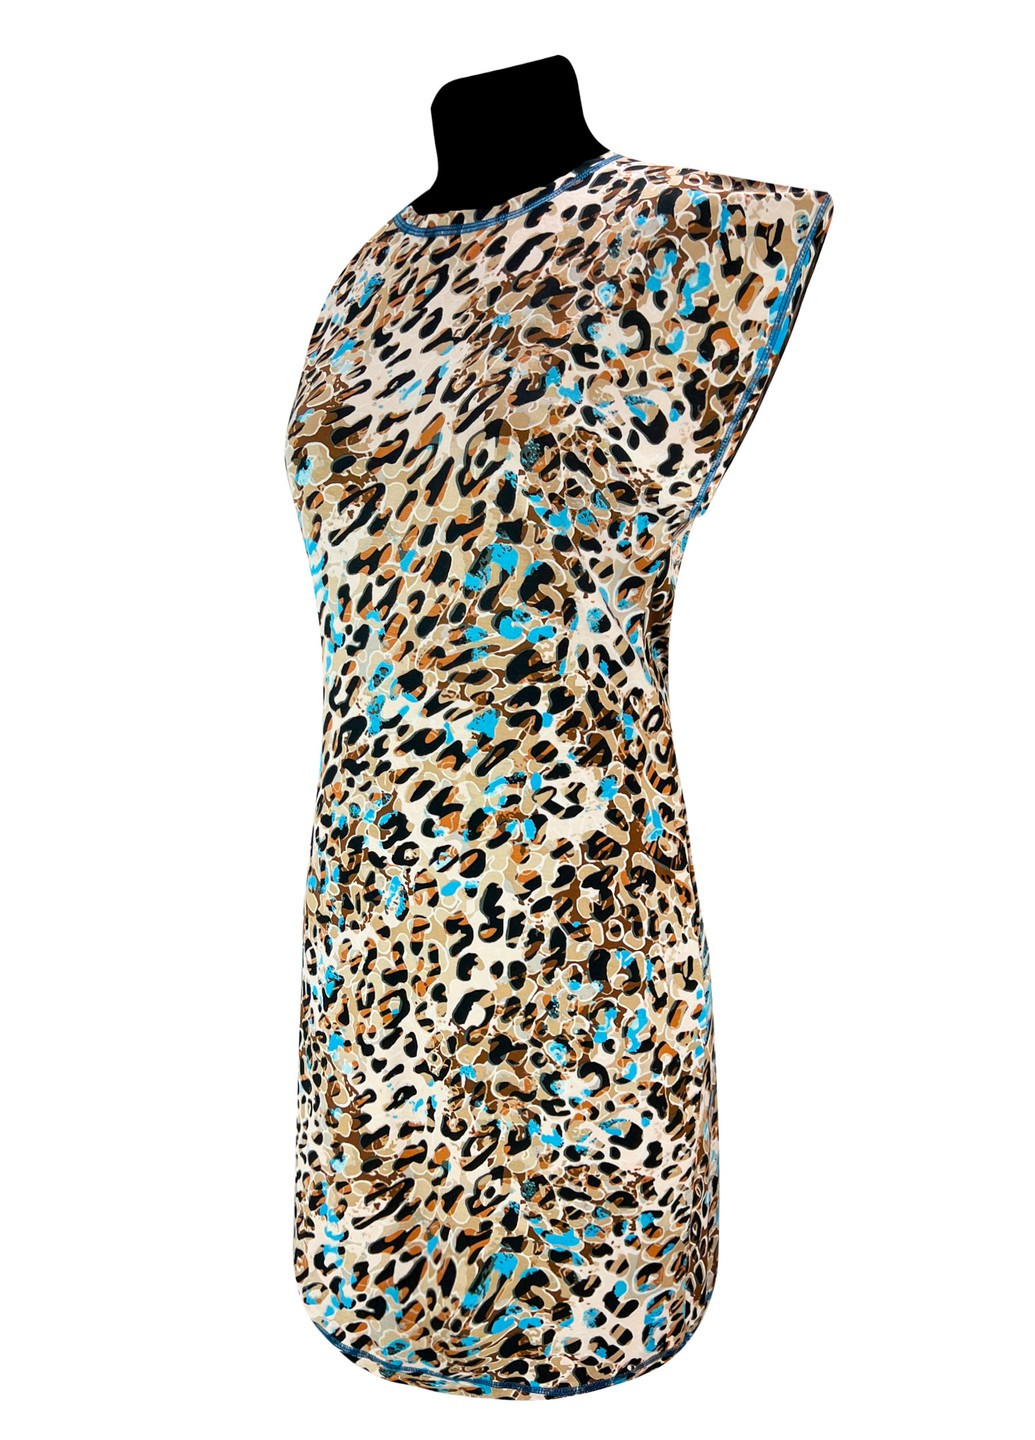 Голубое повседневный платье батал вискоза леопард Жемчужина стилей леопардовый